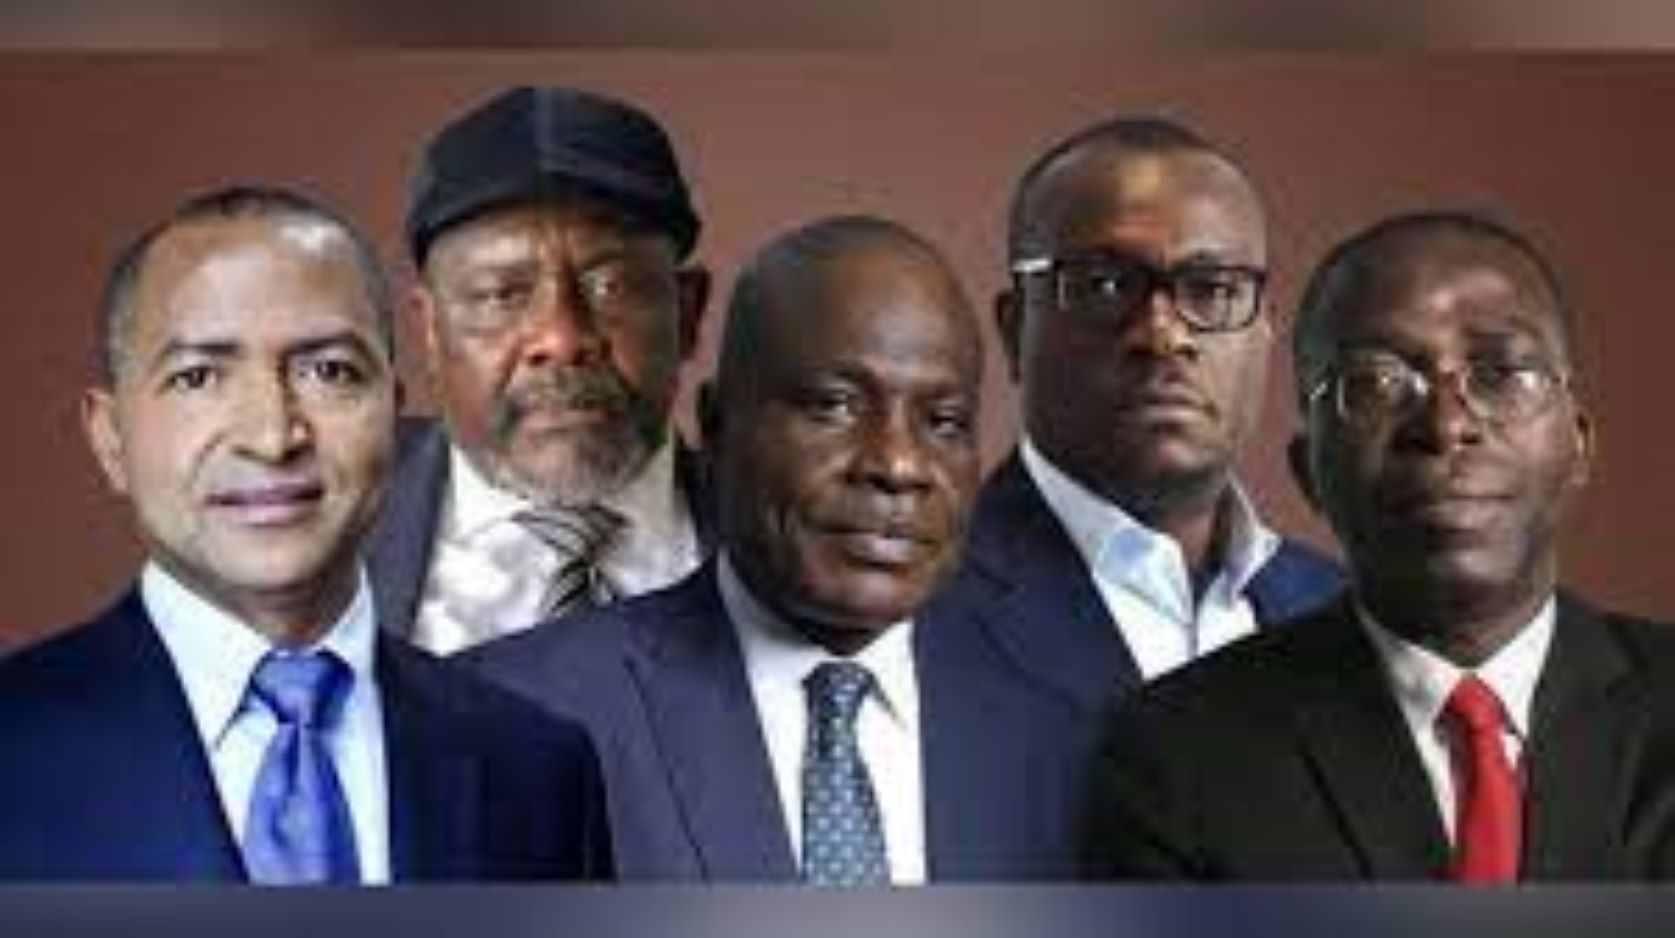 RDC: un front anti-Tshisekedi se dessine en vue de l’élection présidentielle de décembre